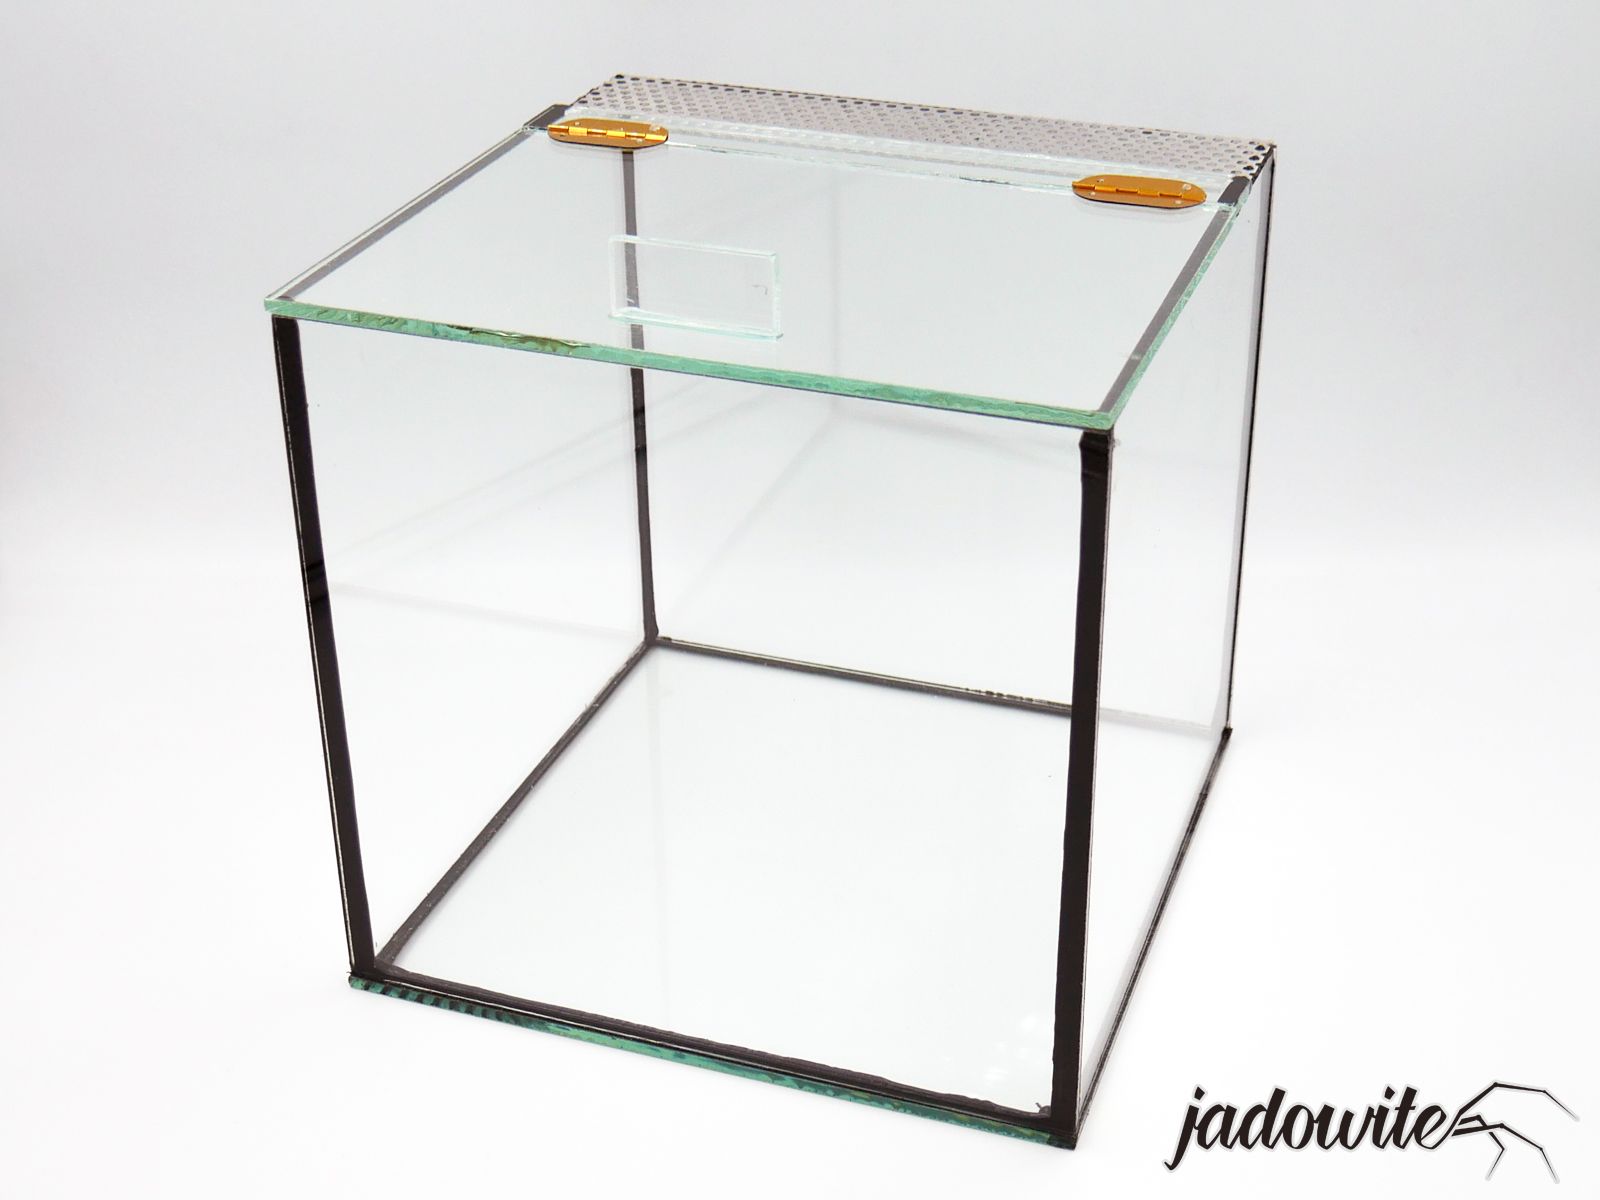 Terrarium szklane 20x20x20, otwieranie klapka - czarny silikon 69,90 zł